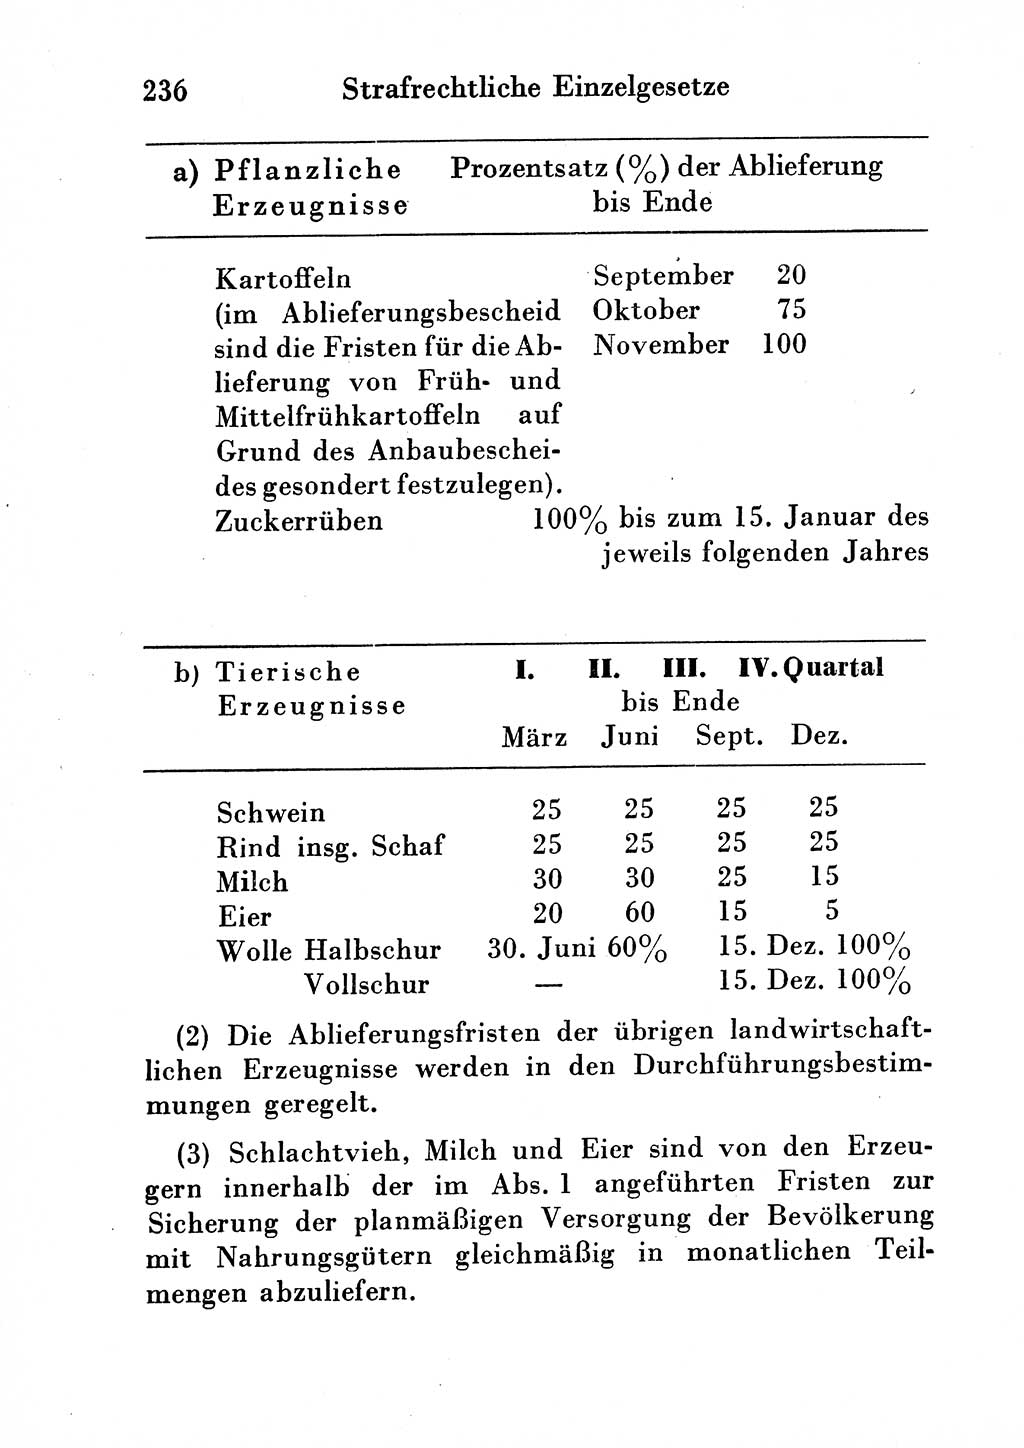 Strafgesetzbuch (StGB) und andere Strafgesetze [Deutsche Demokratische Republik (DDR)] 1954, Seite 236 (StGB Strafges. DDR 1954, S. 236)